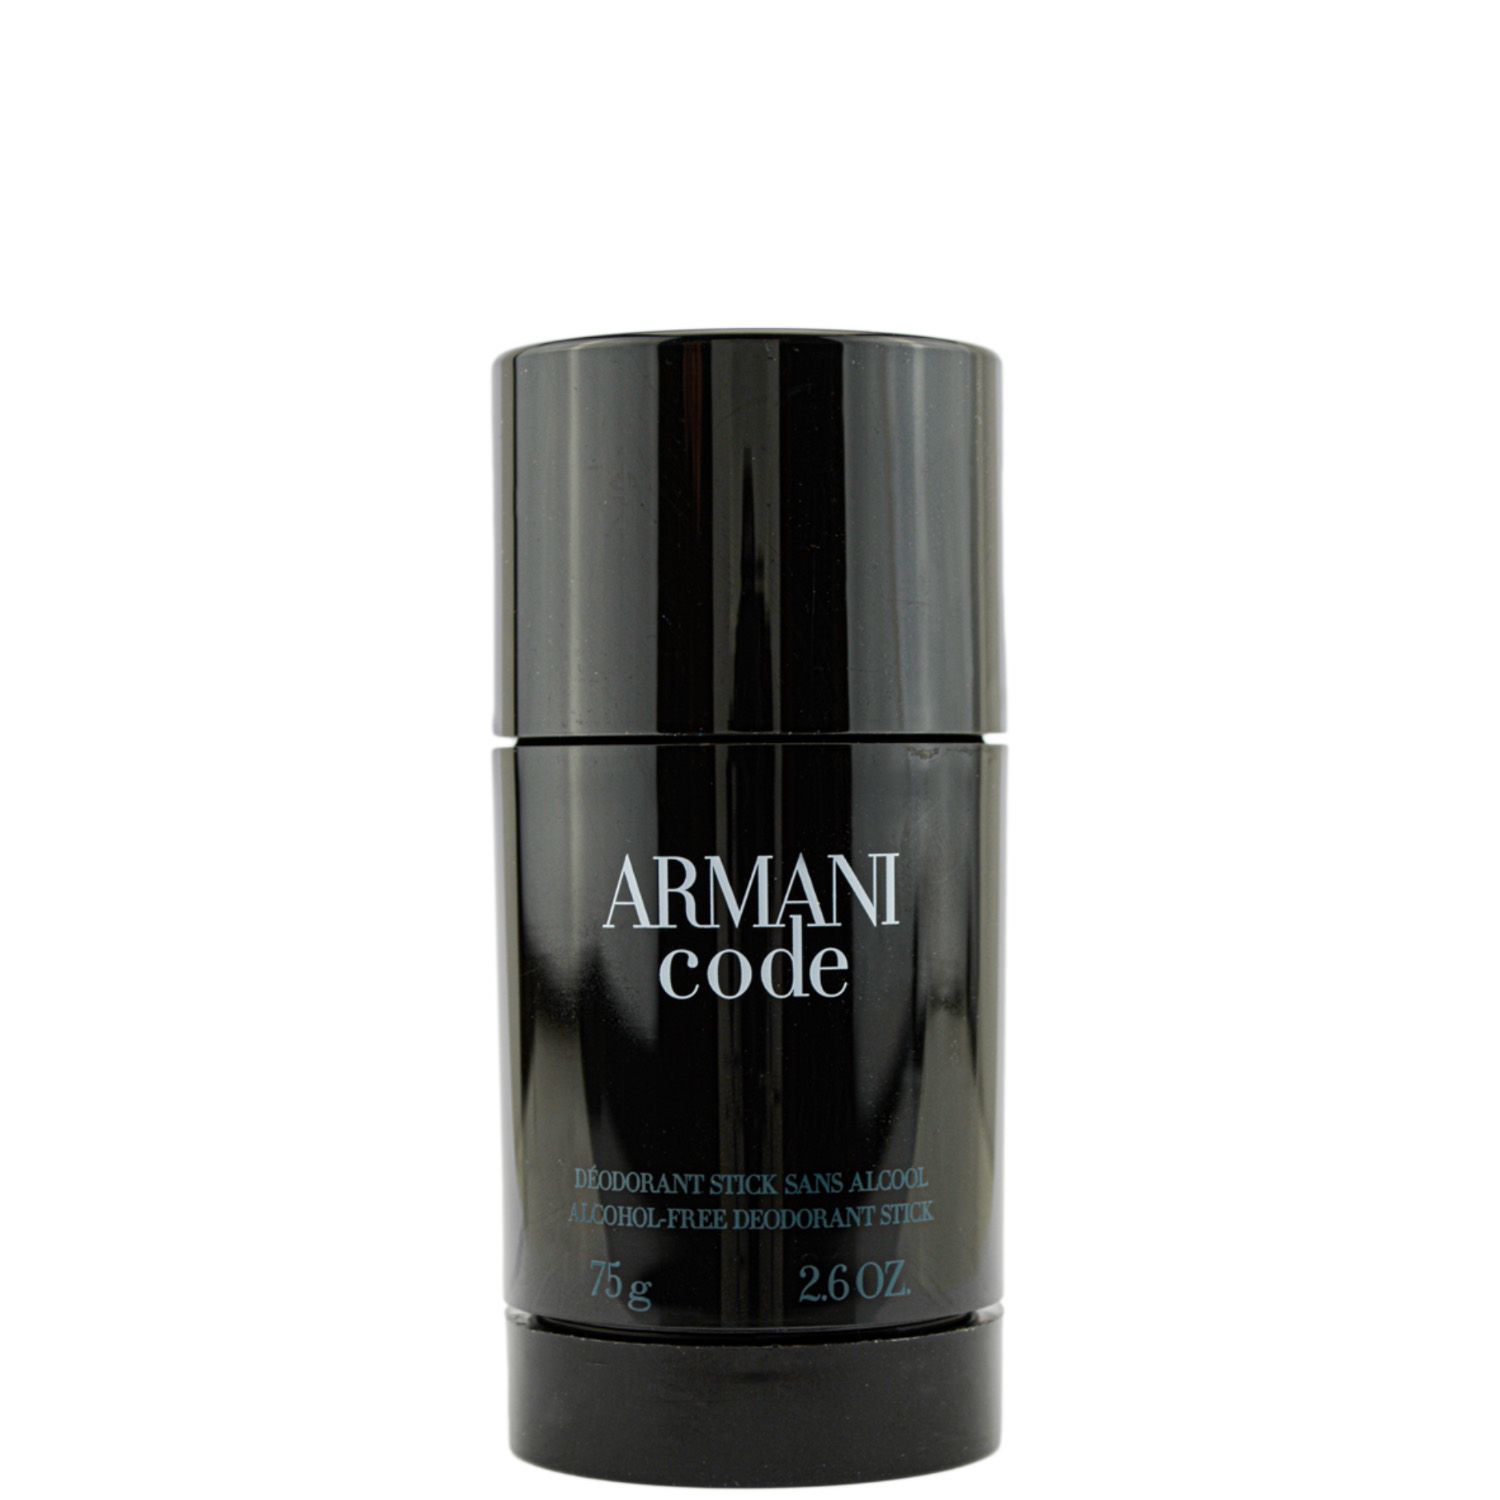 Giorgio Armani Code Homme Deodorant Stick 75ml